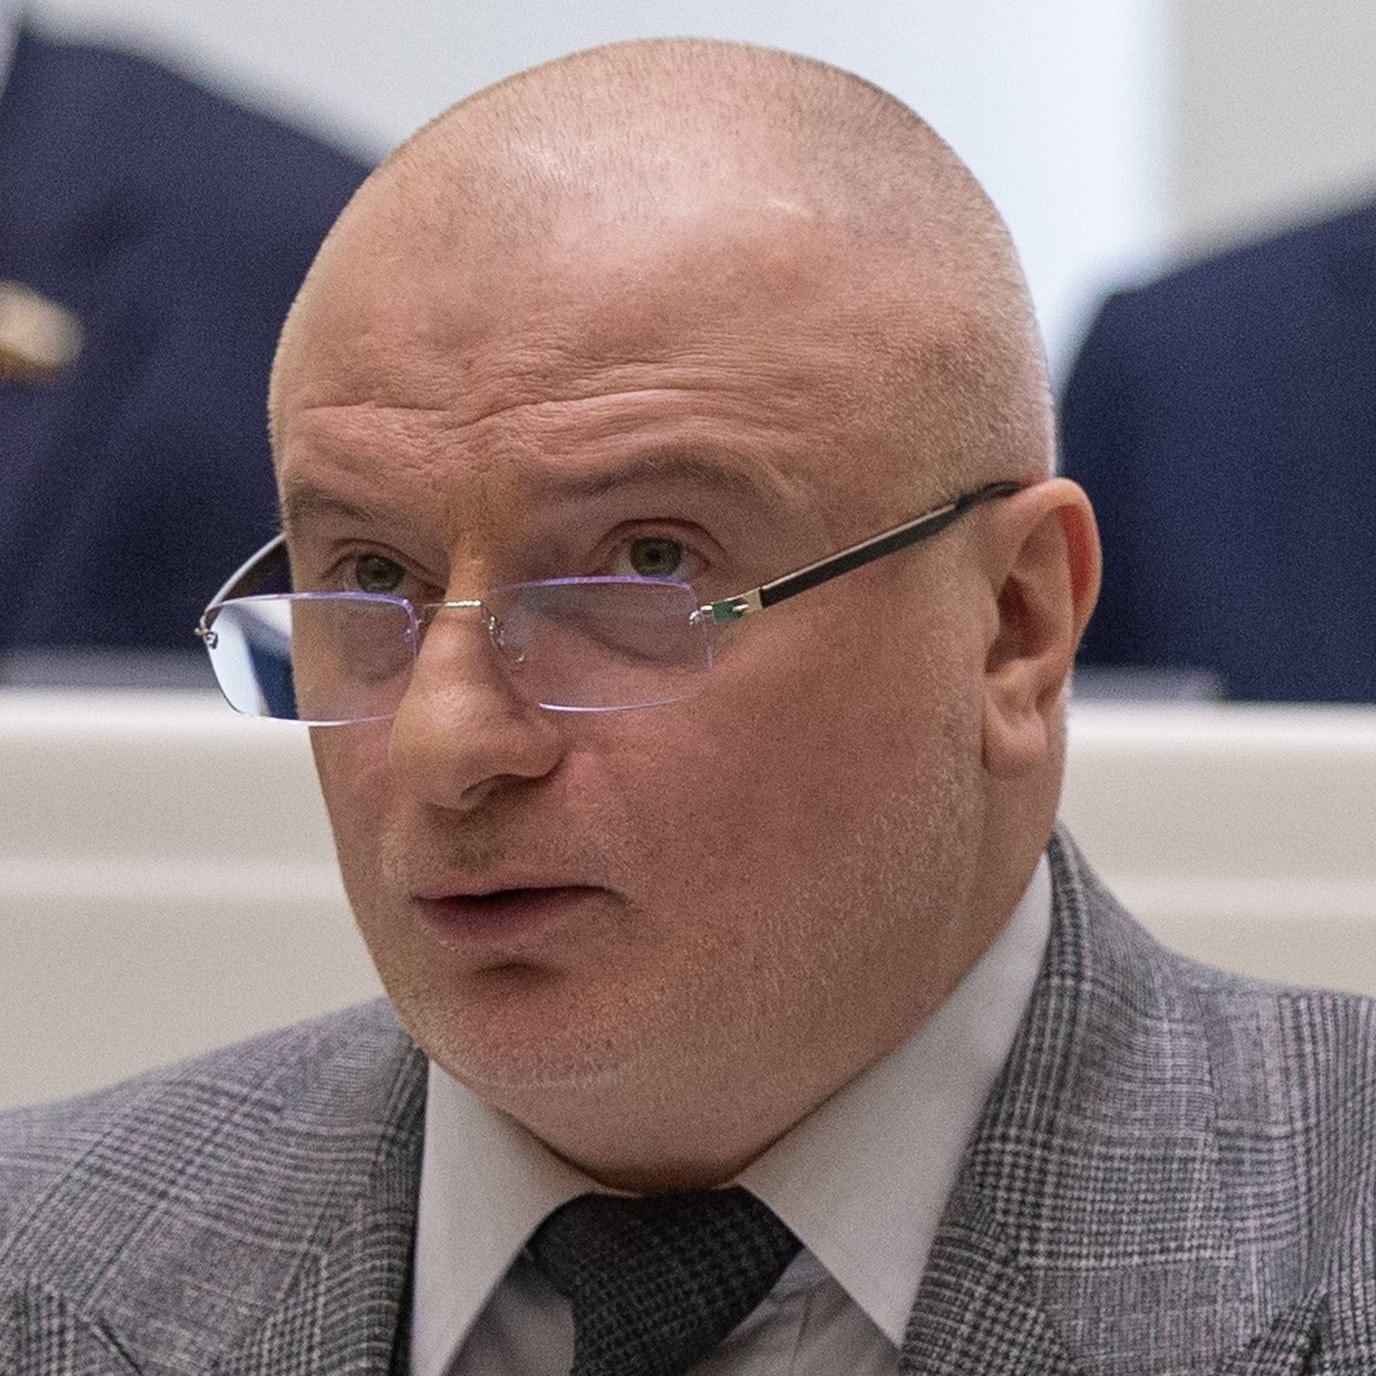 Андрей Клишас, один из авторов законопроекта / Фото: council.gov.ru,  CC BY 4.0